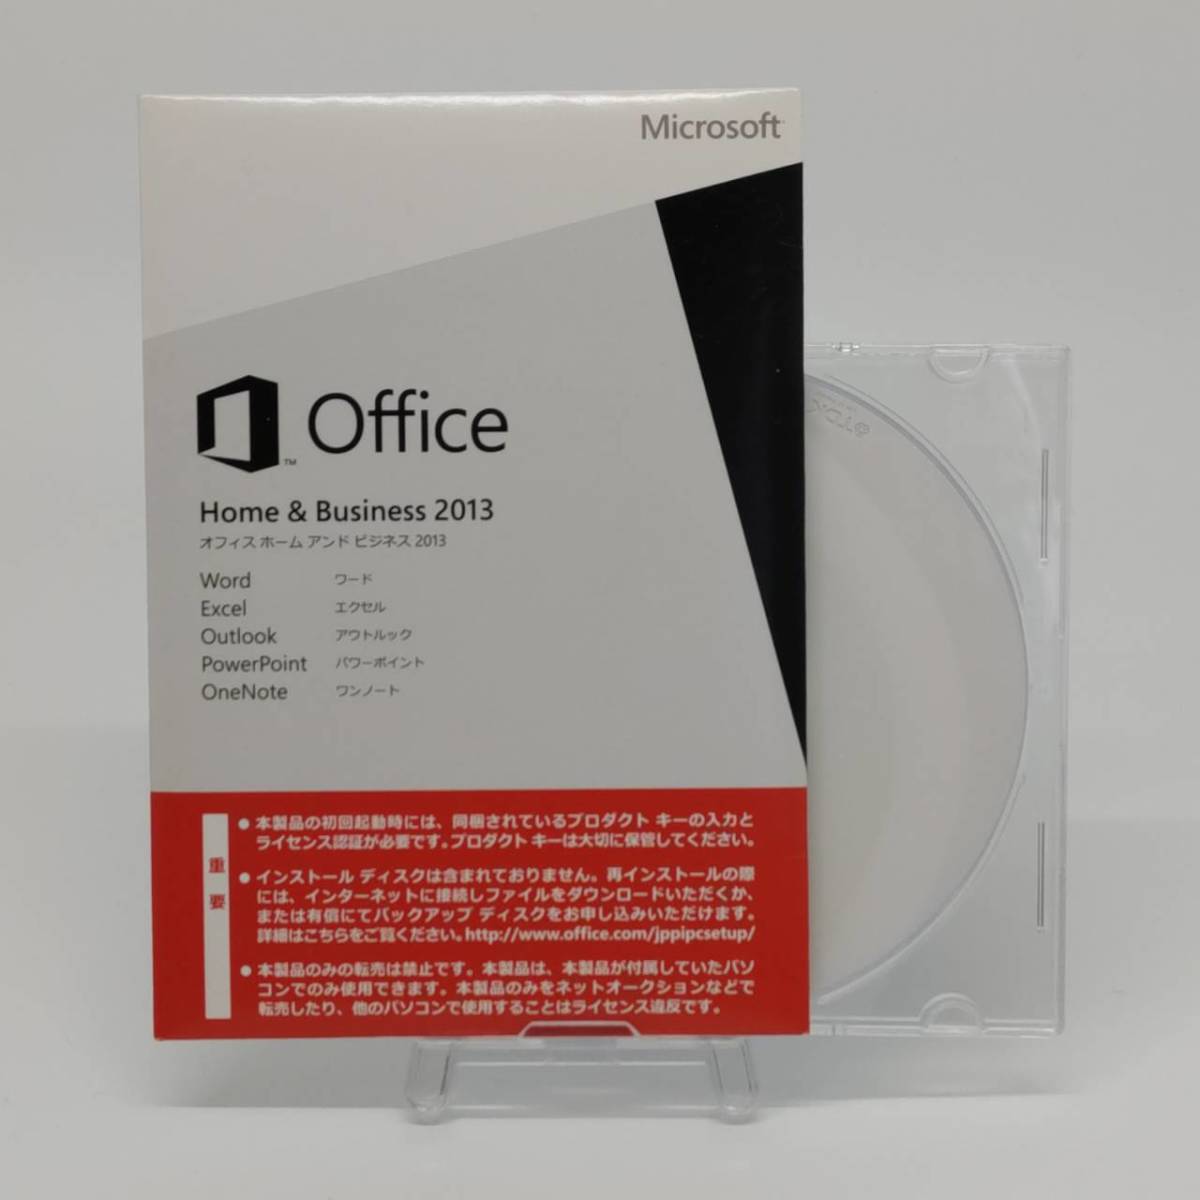 【正規品】 インストールDVD付 Microsoft Office Home & Business 2013 OEM版 匿名配送 _画像1